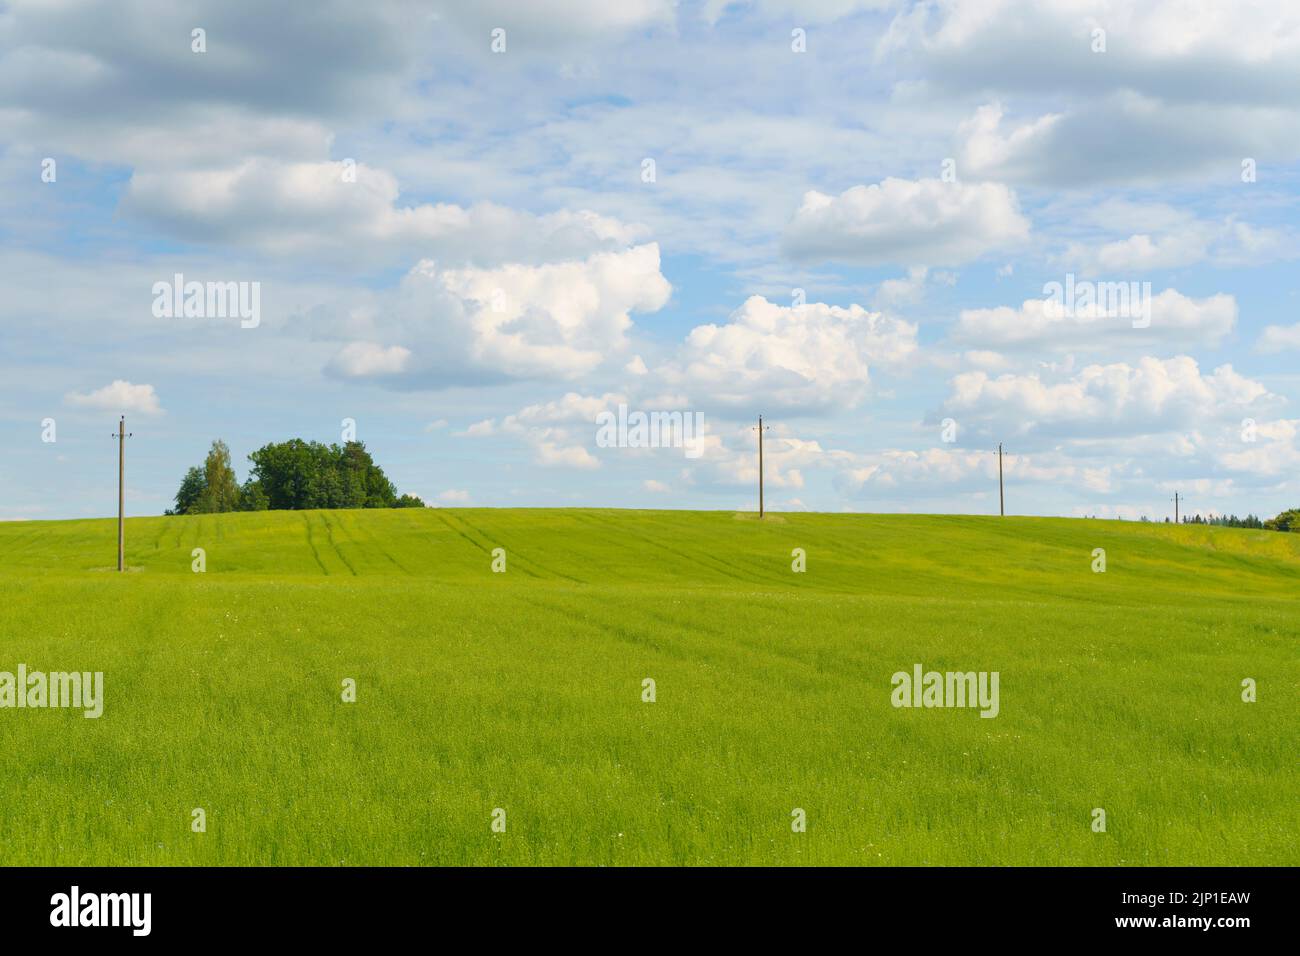 Verano paisaje rural con campo verde y prado bajo el cielo azul soleado. Fotografía de alta calidad Foto de stock